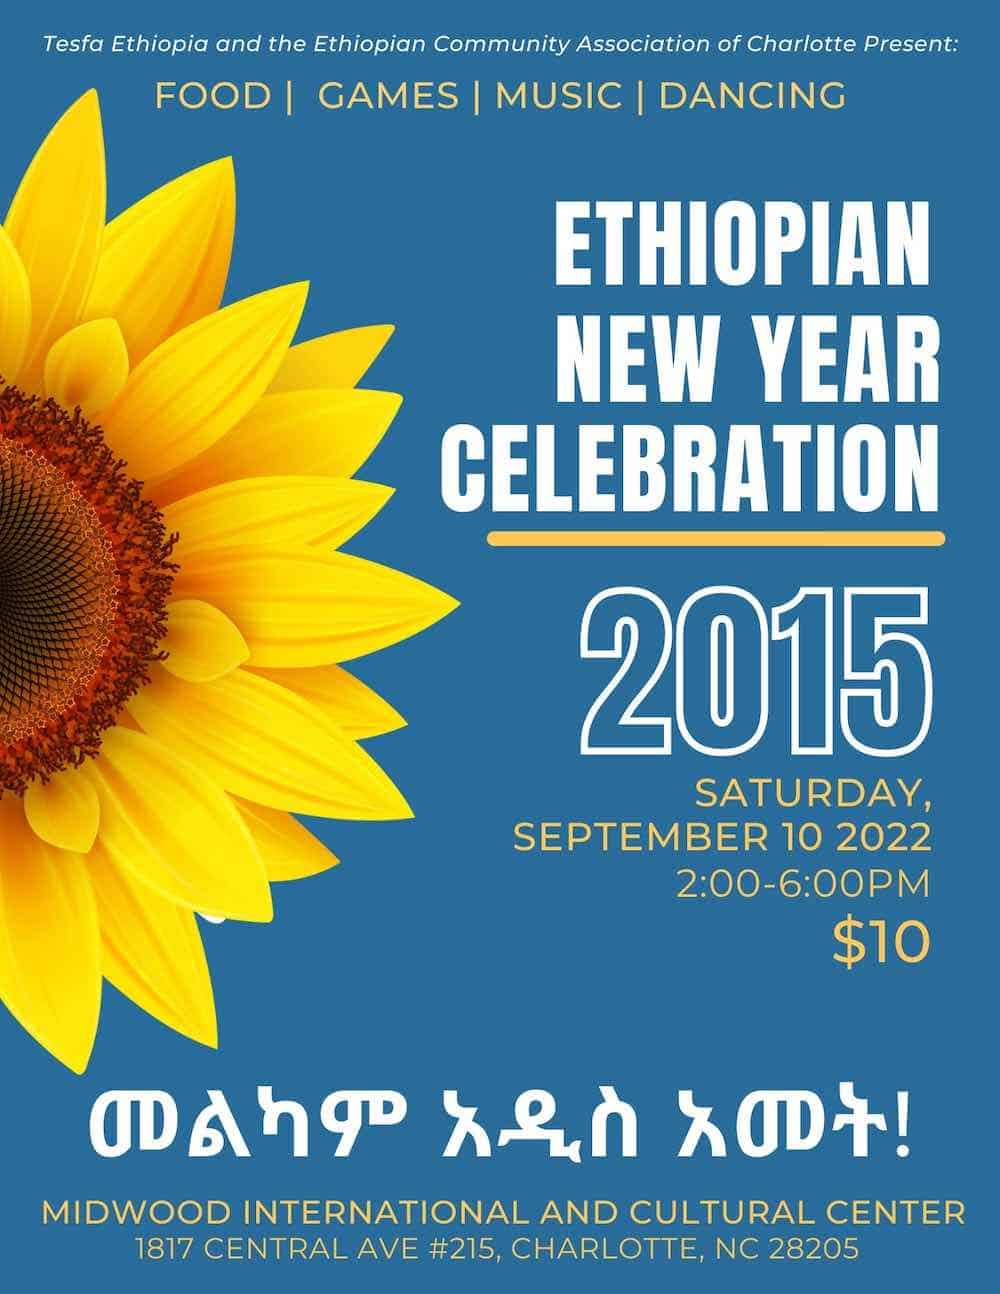 Ethiopia là một đất nước với nhiều lễ hội hấp dẫn, mang đậm nét đặc trưng của văn hóa địa phương. Hãy cùng xem hình ảnh các lễ hội ở Ethiopia và tìm hiểu thêm về truyền thống đầy màu sắc của đất nước này.